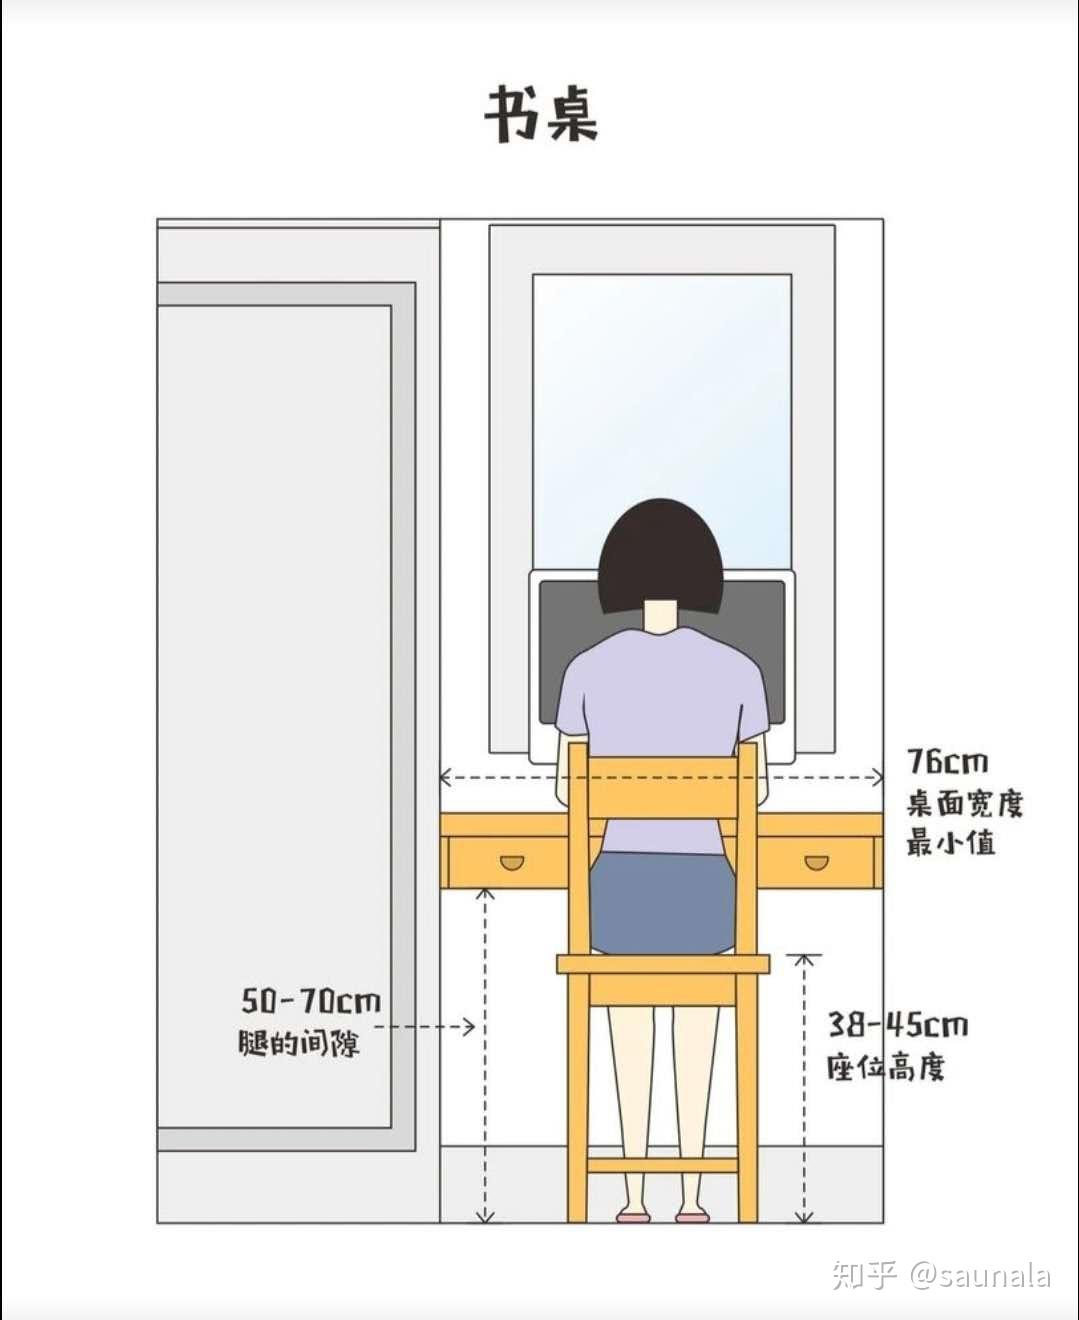 人体生理测算,写字台高度应为75~80cm,考虑到腿在桌子下面的活动区域